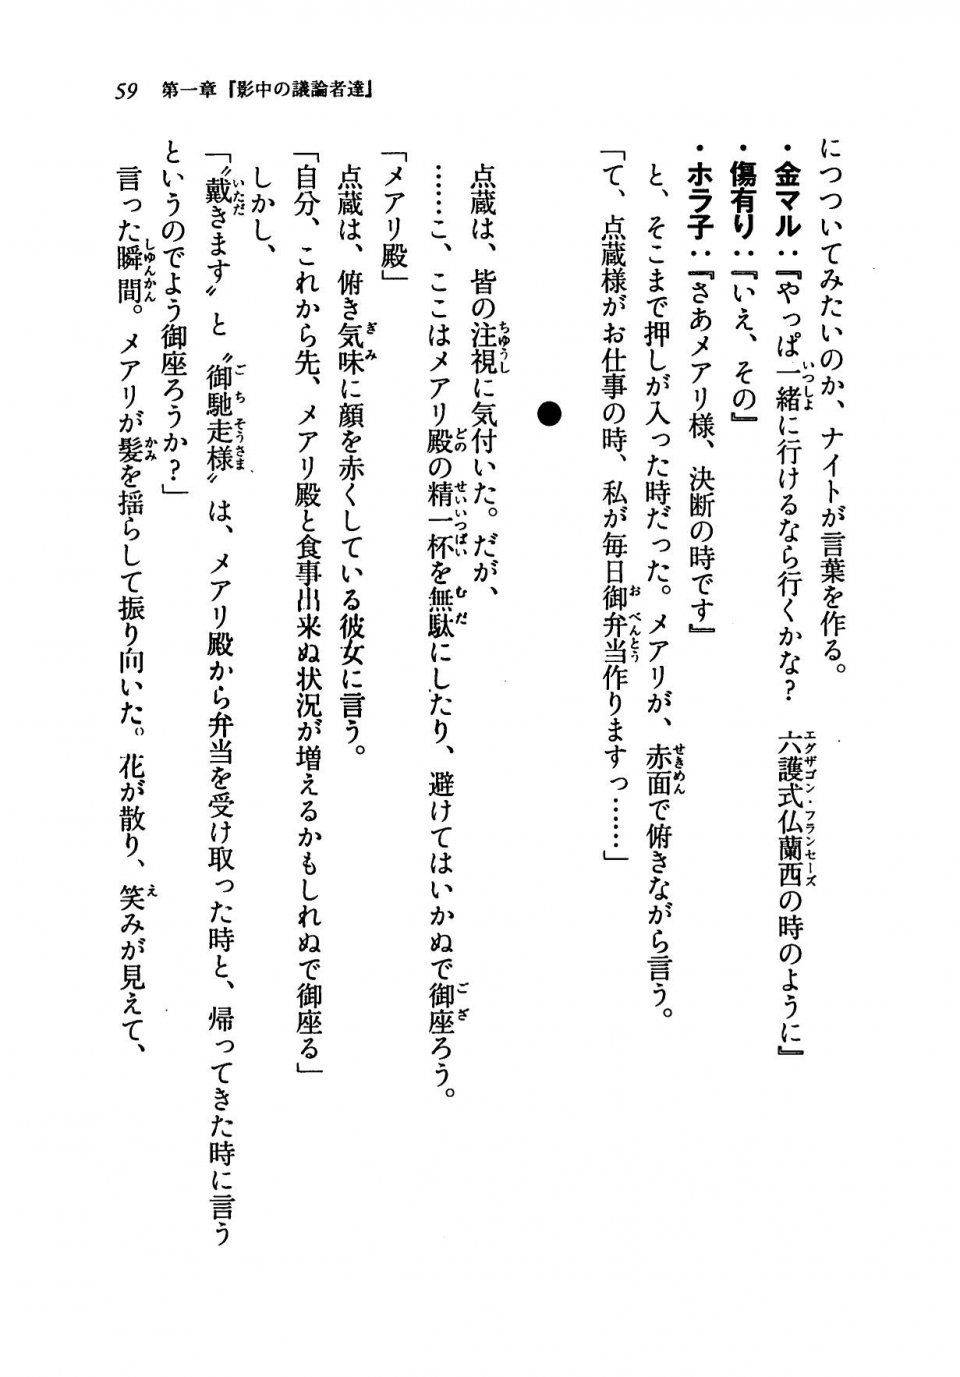 Kyoukai Senjou no Horizon LN Vol 19(8A) - Photo #59